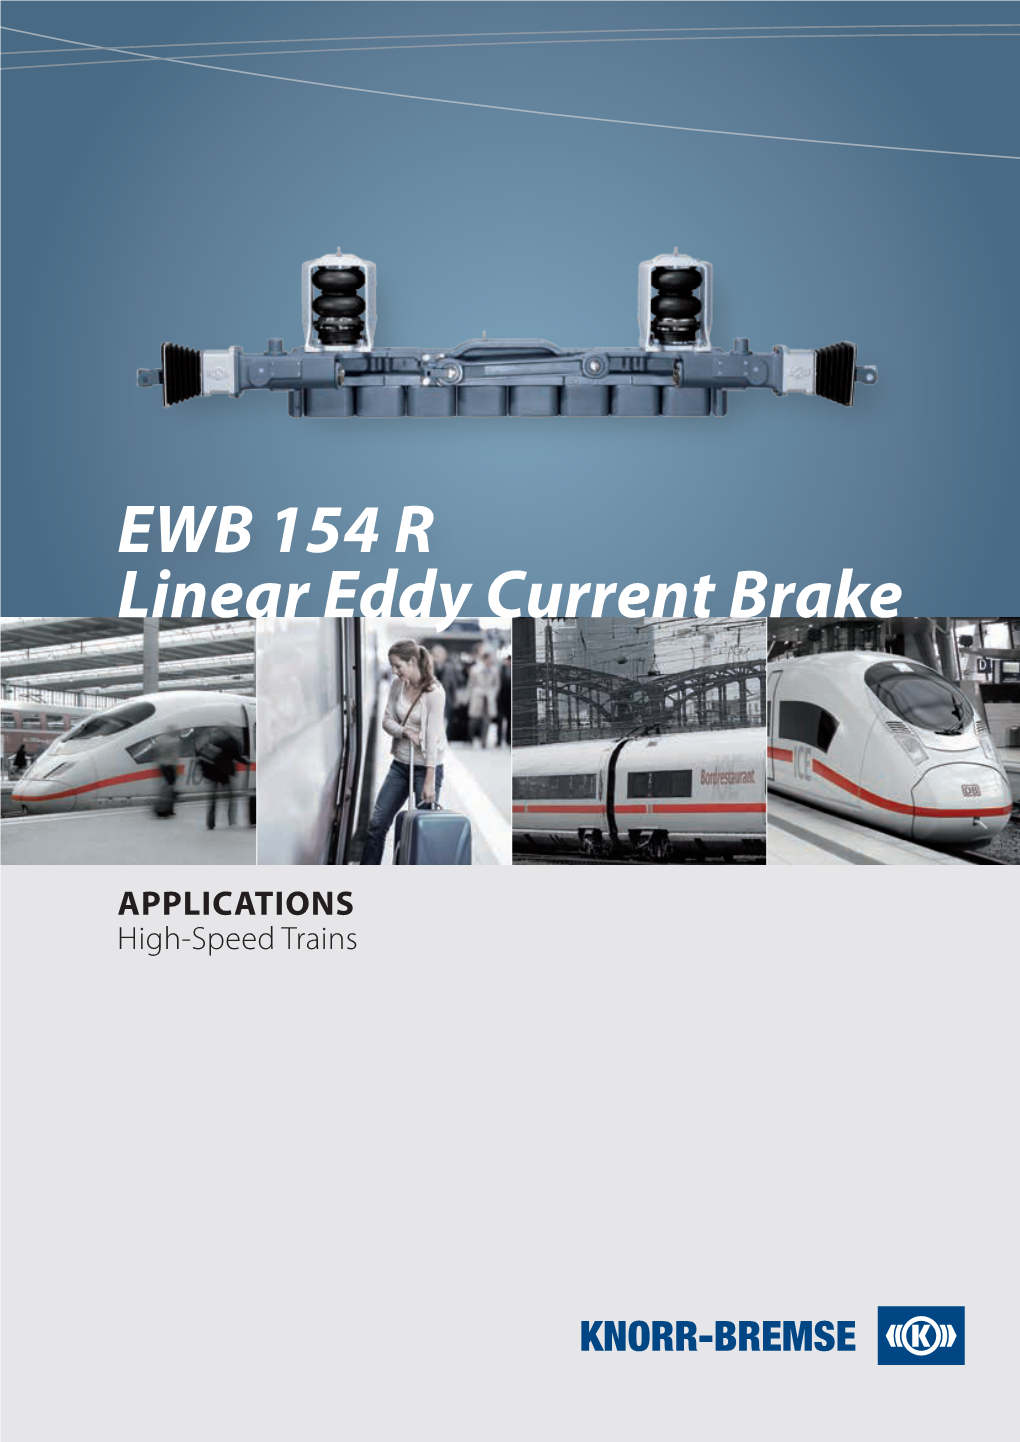 EWB 154 R Linear Eddy Current Brake